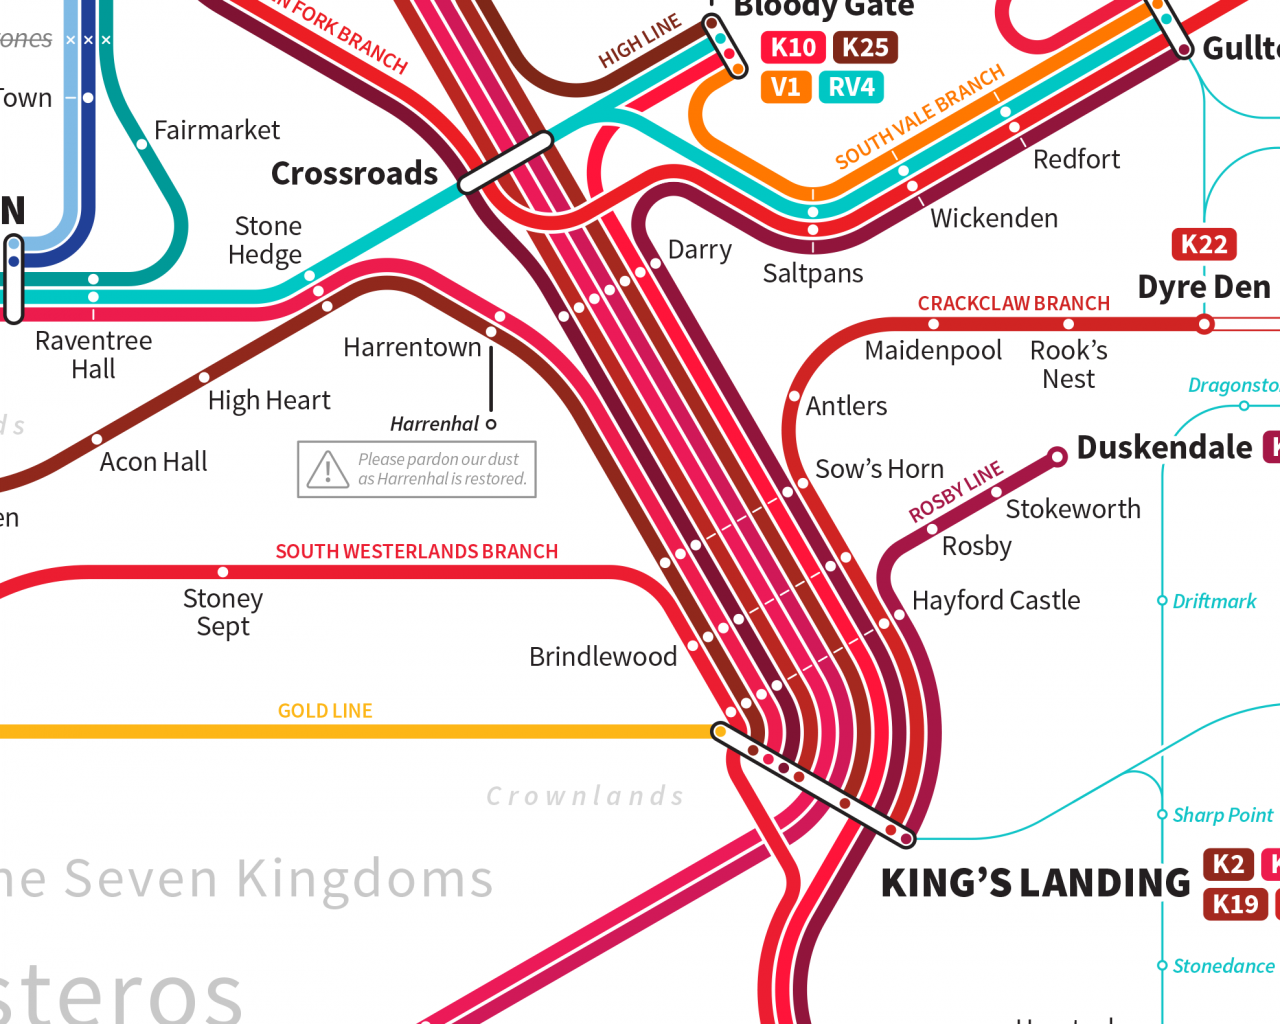 Պլանավորեք ձեր ճանապարհորդությունները Westeros- ի միջոցով մետրոյի այս մանրամասն քարտեզով